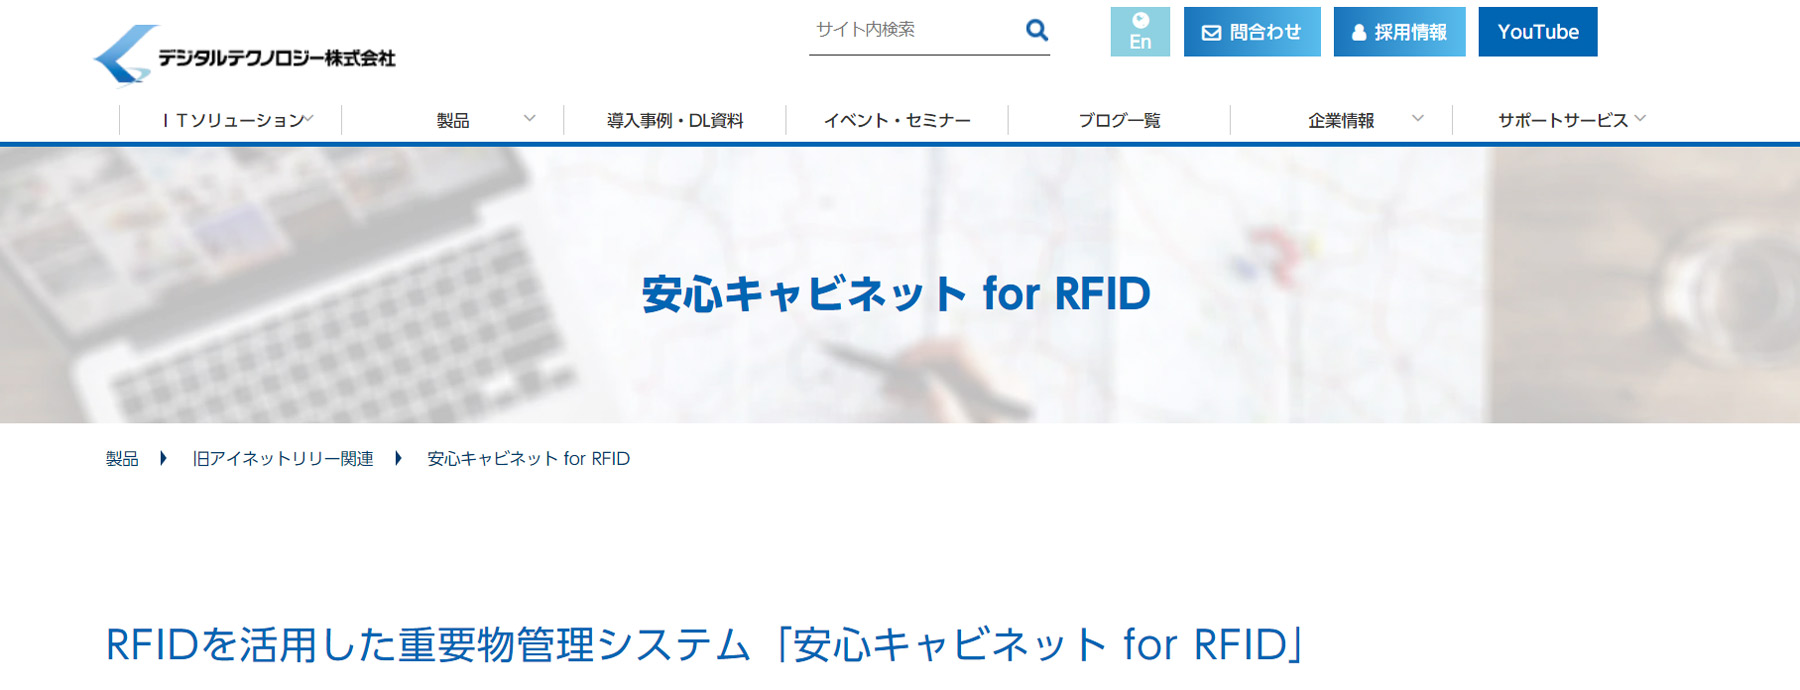 安心キャビネット for RFID公式Webサイト